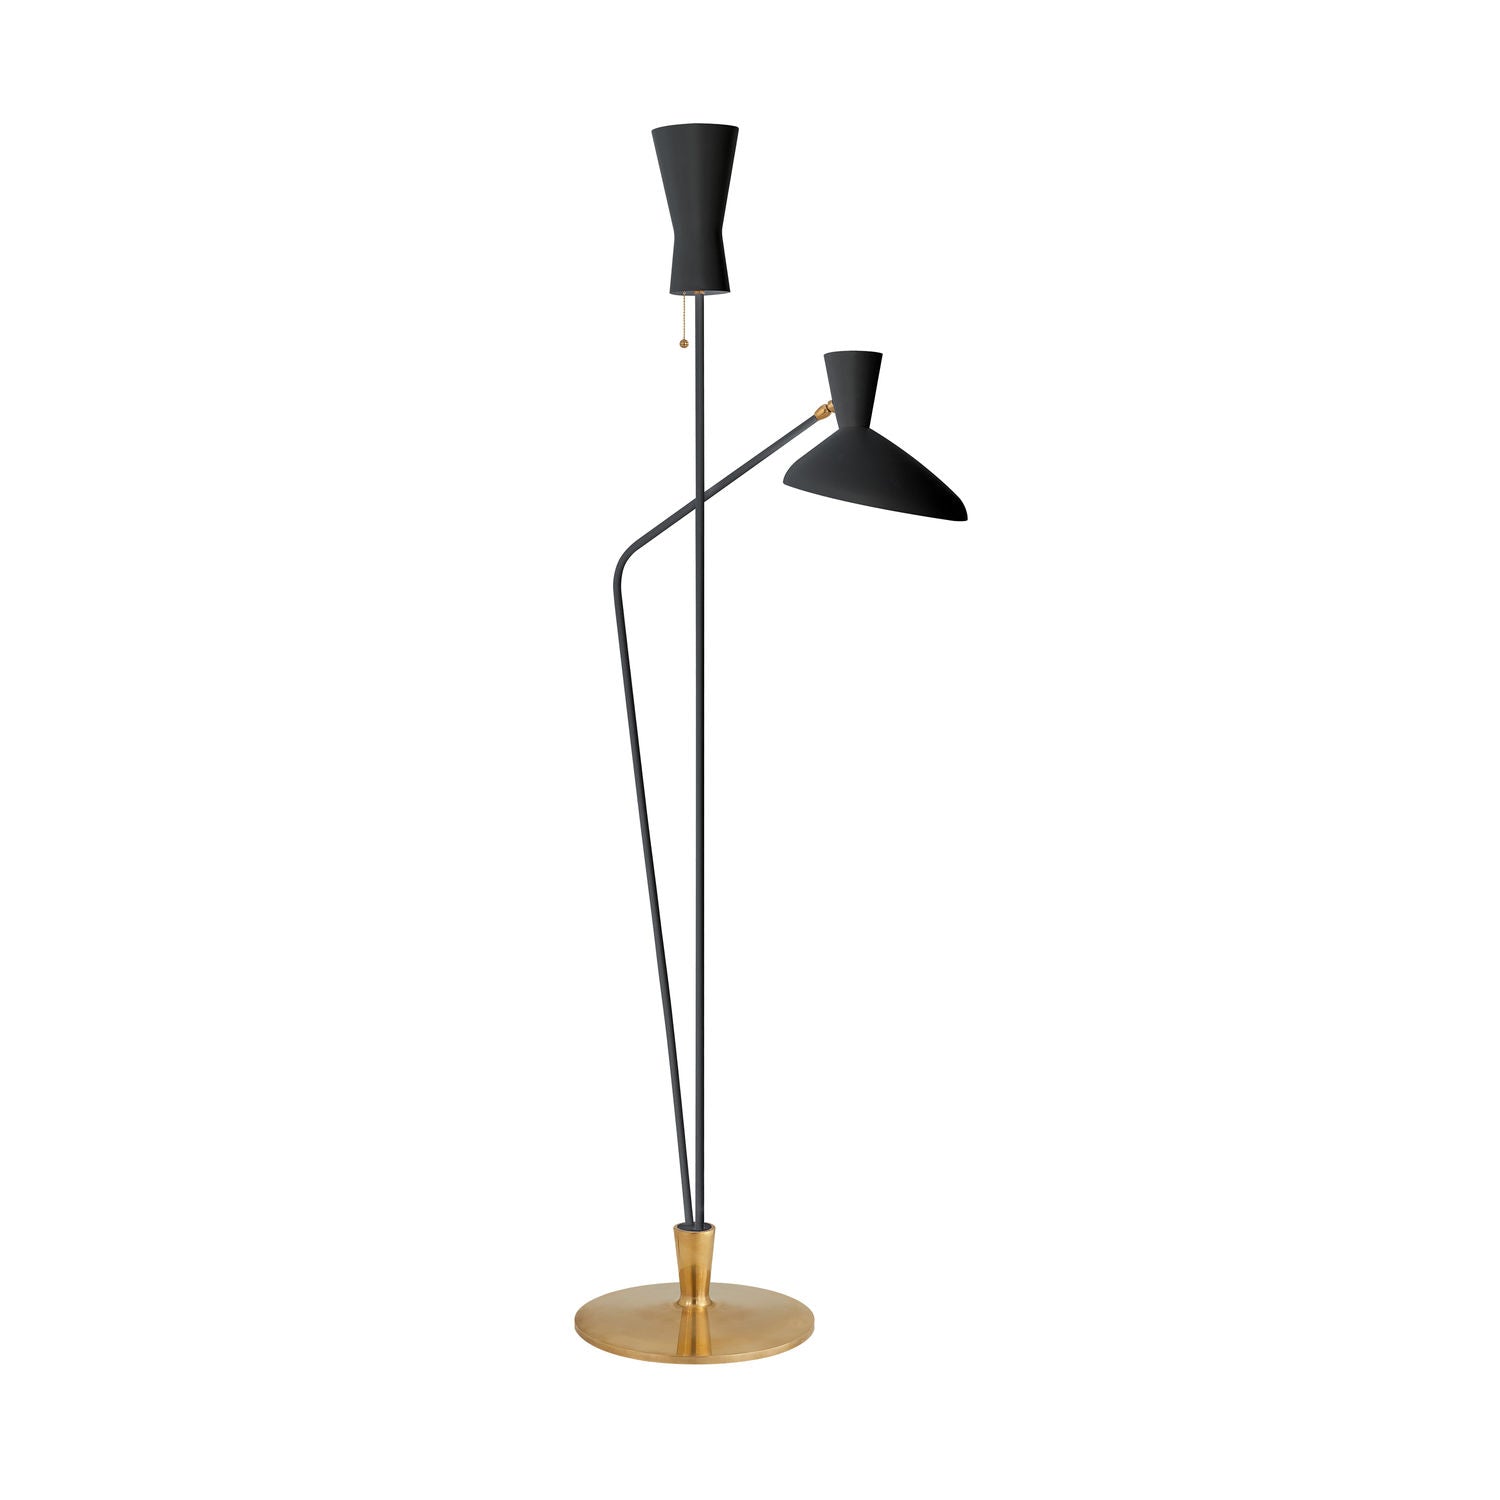 Designer Floor Lamps